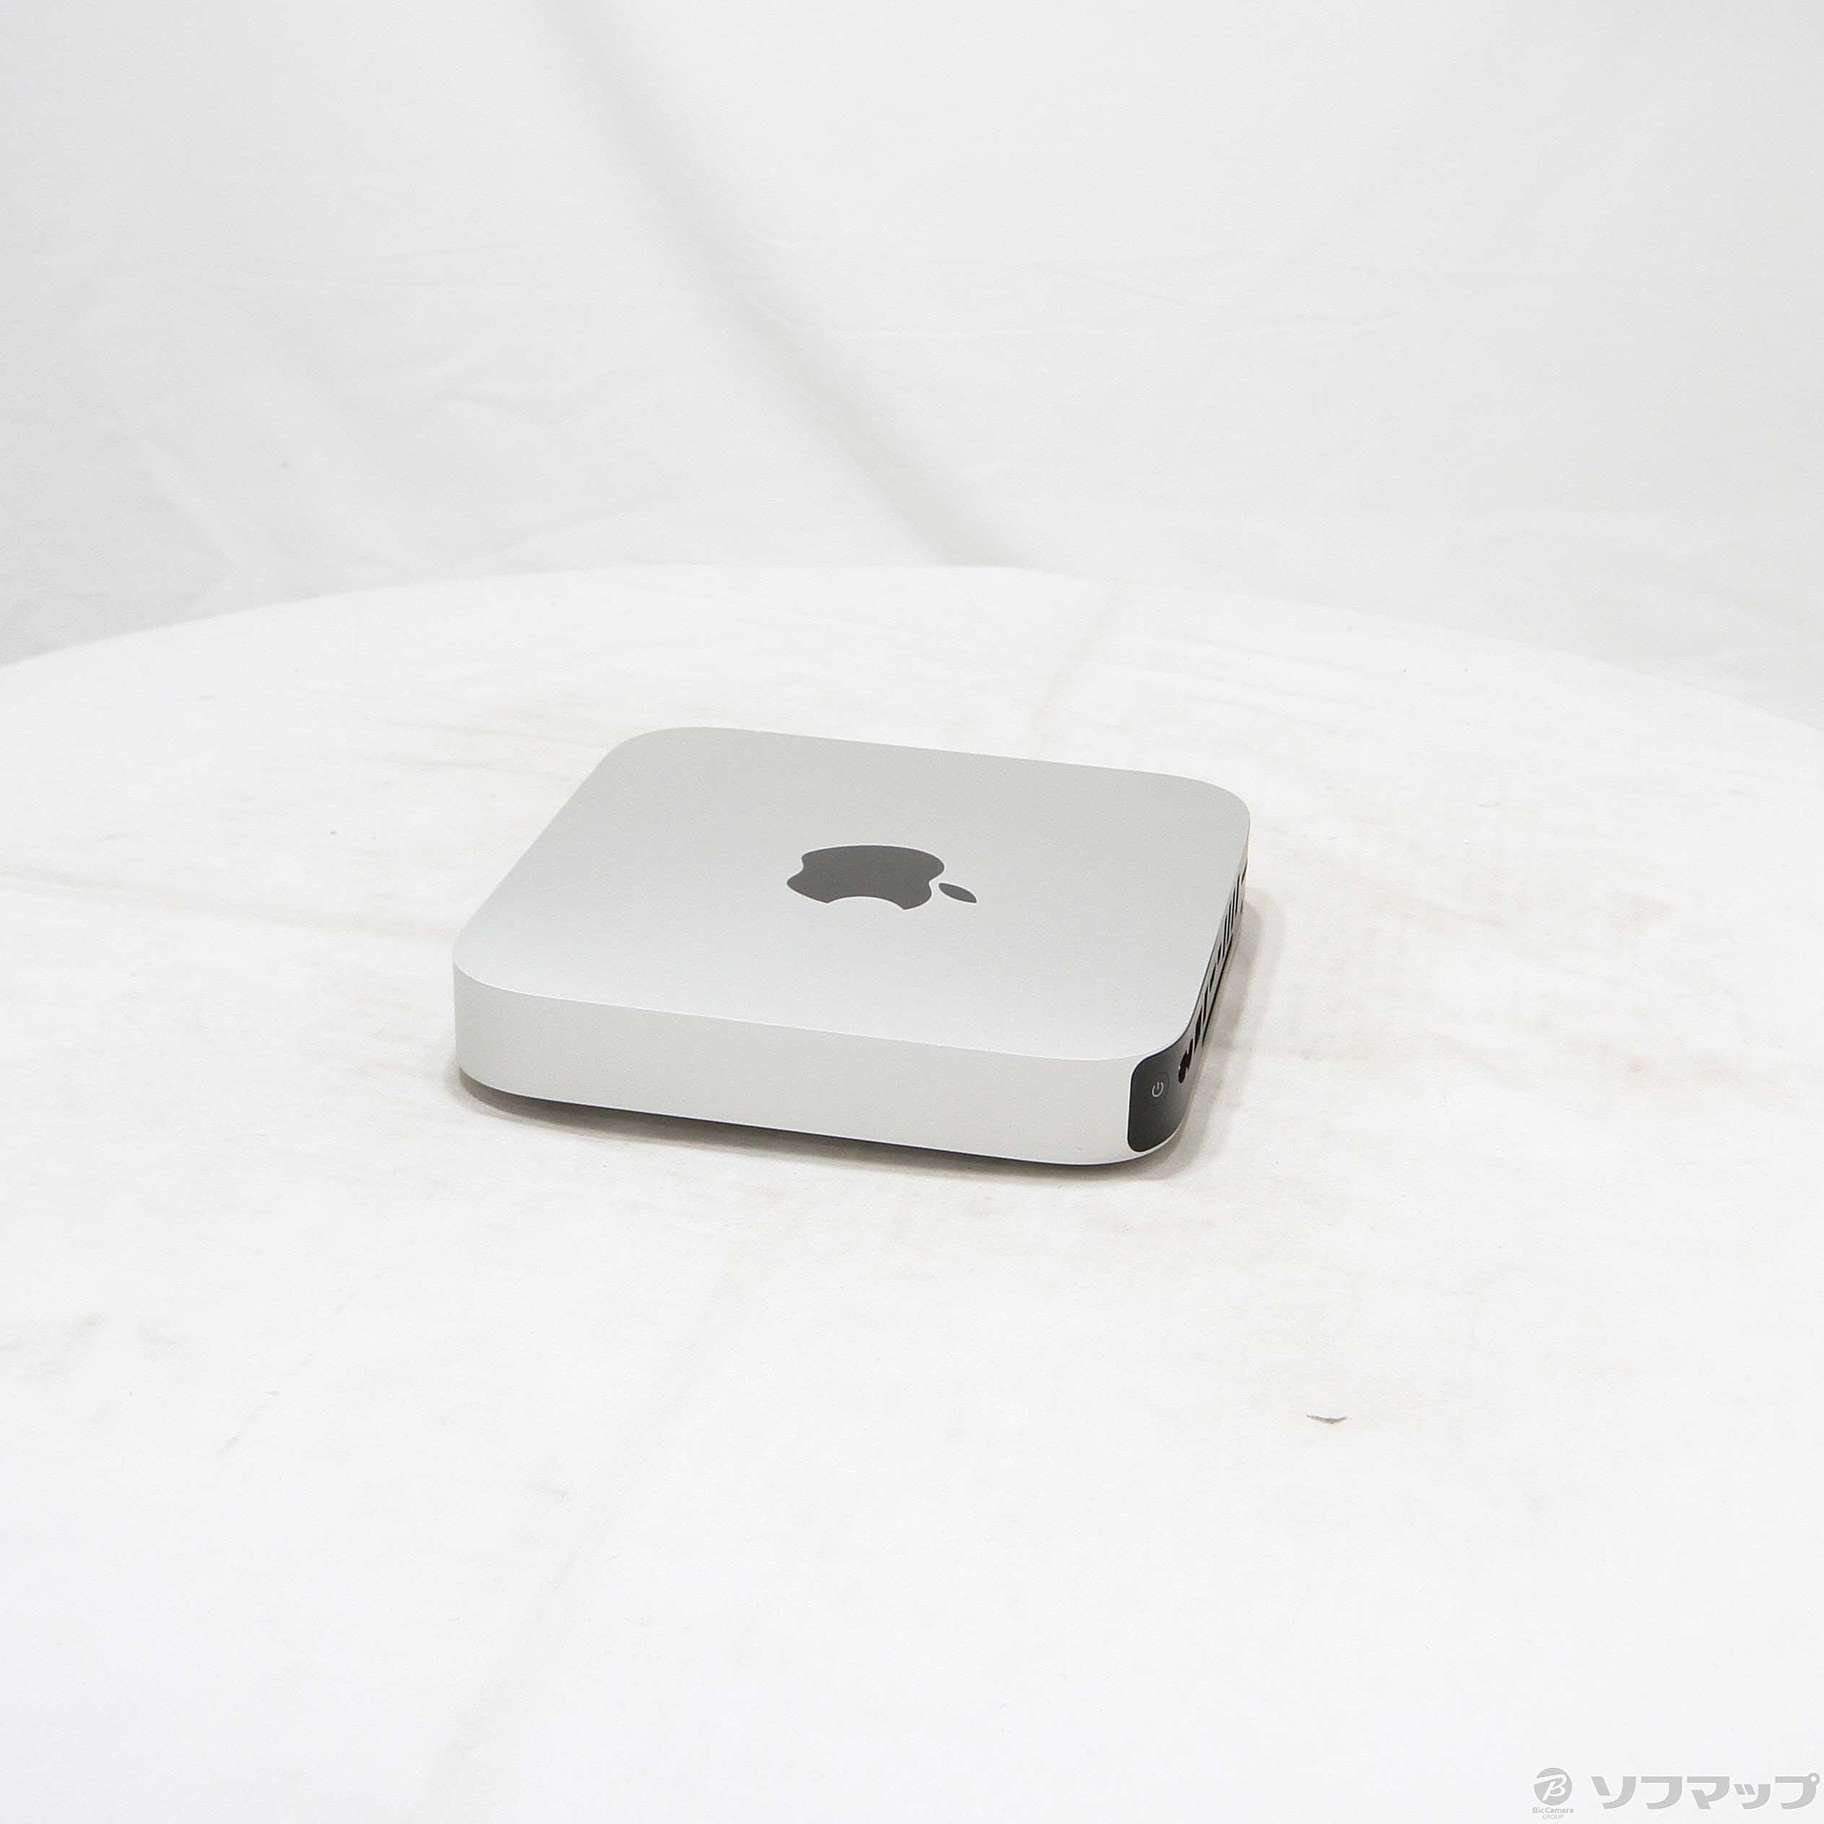 中古品Mac mini Late 2012 MD387J/A Core_i5 2.5GHz 16GB SSD500GB